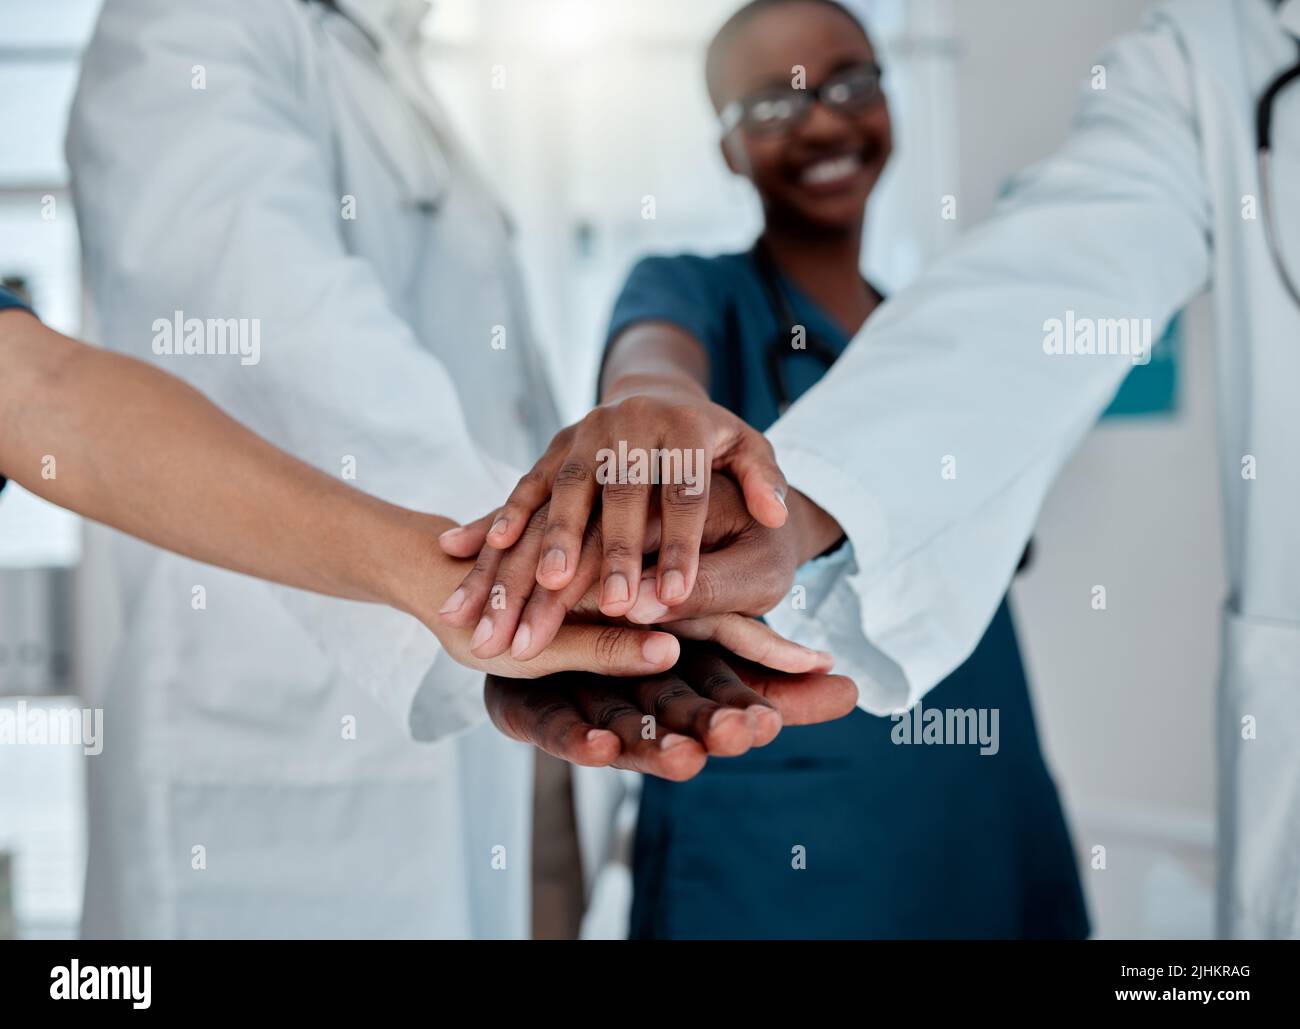 Gruppo di medici diversi che si accatastano le mani in supporto mentre lavorano in un ospedale. Professionisti medici che uniscono le loro mani in unità e. Foto Stock